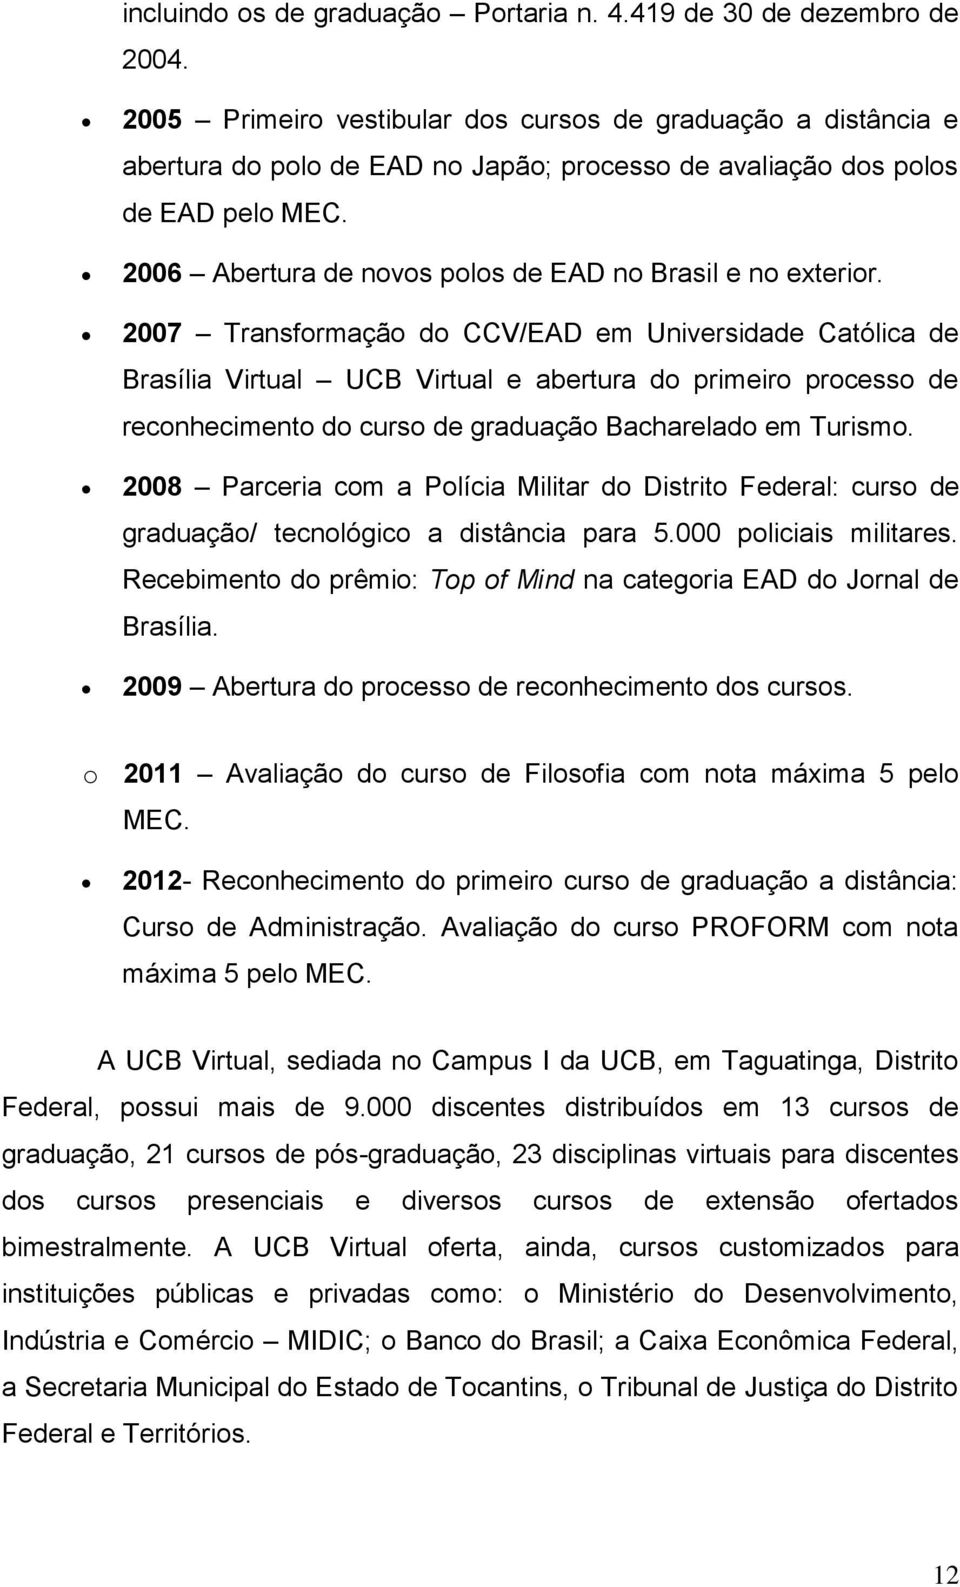 2006 Abertura de novos polos de EAD no Brasil e no exterior.